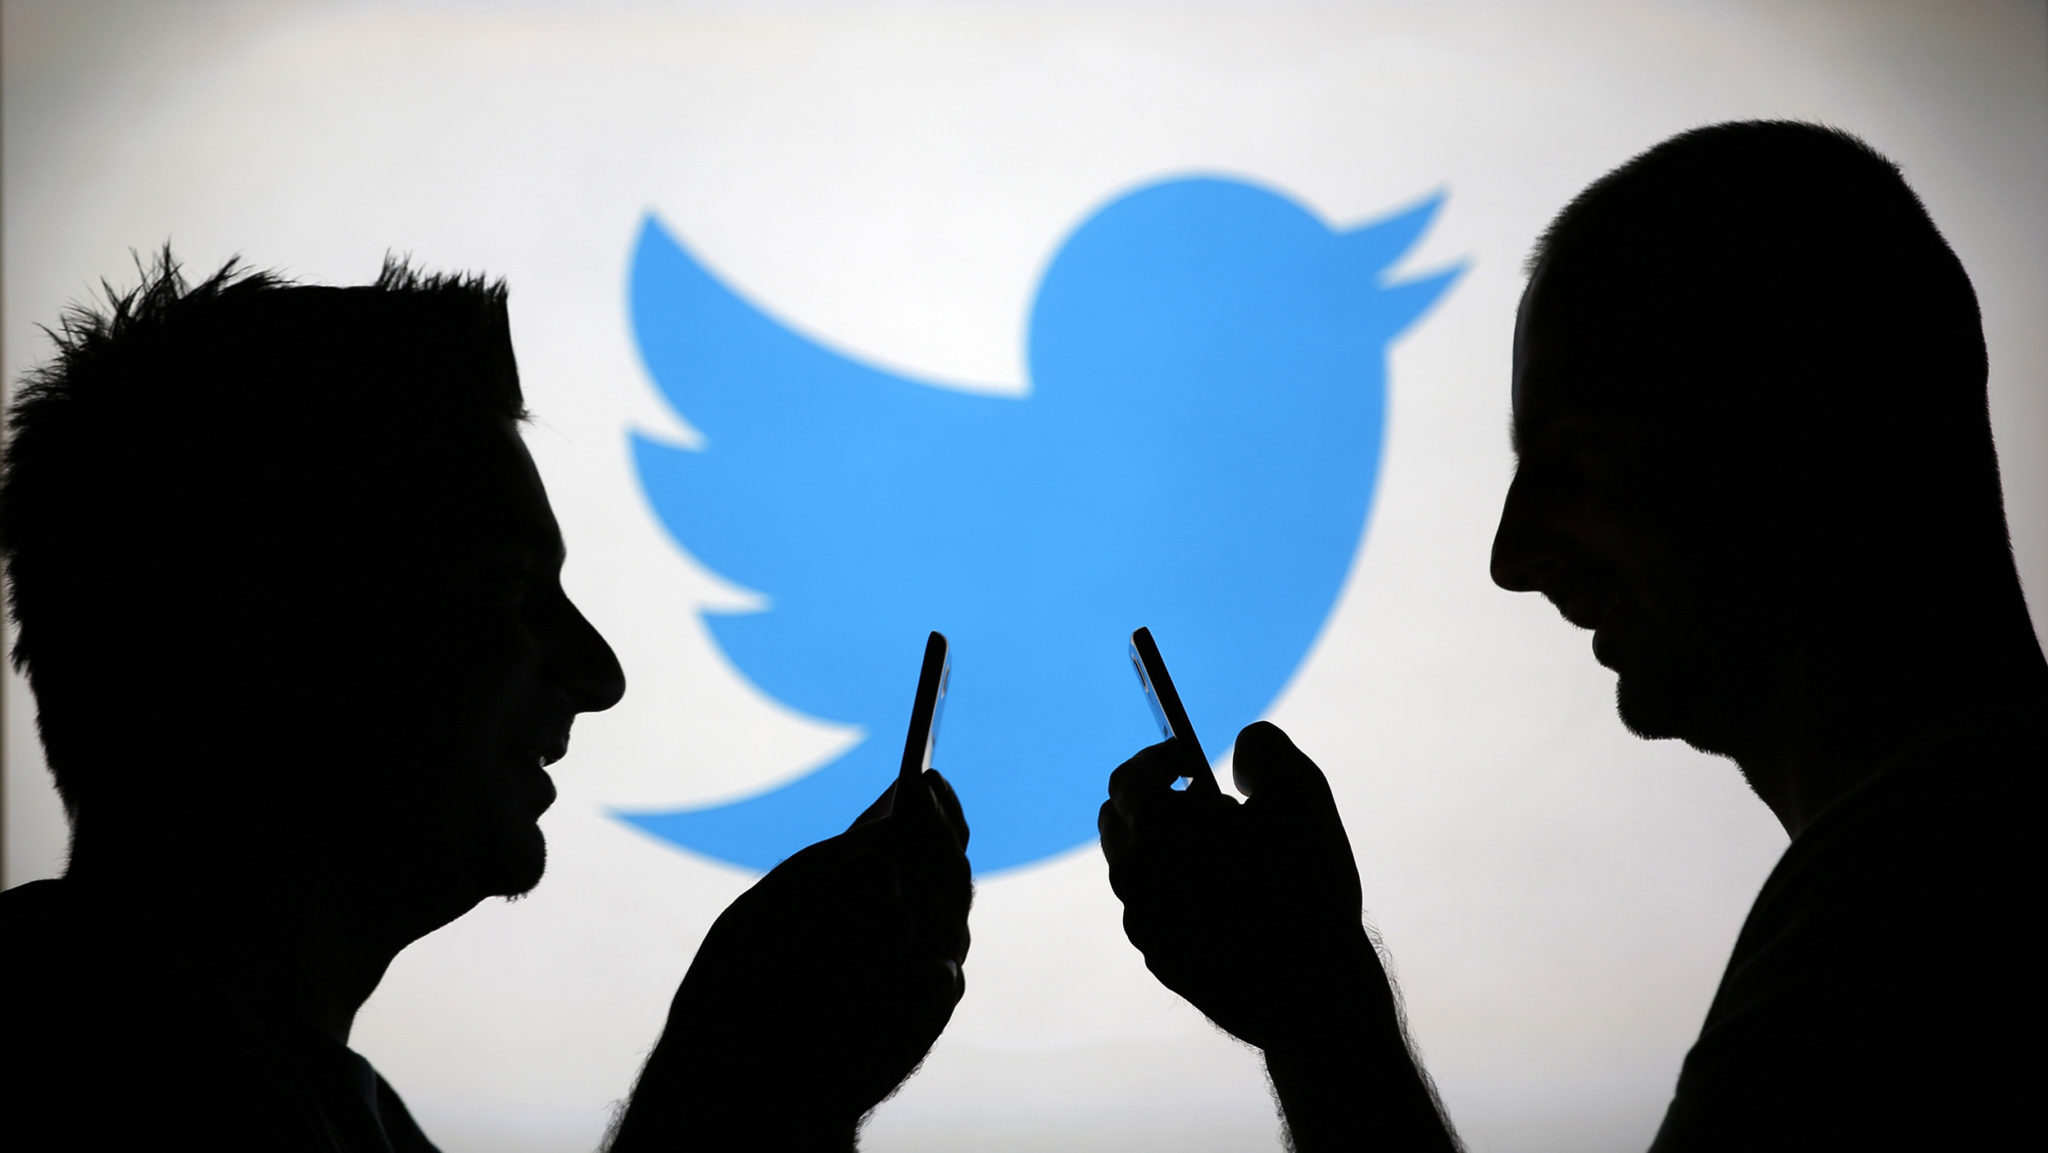 تويتر تحدث خاصية جديدة  للإعداد الخاص بالتغريدات المحفوظة